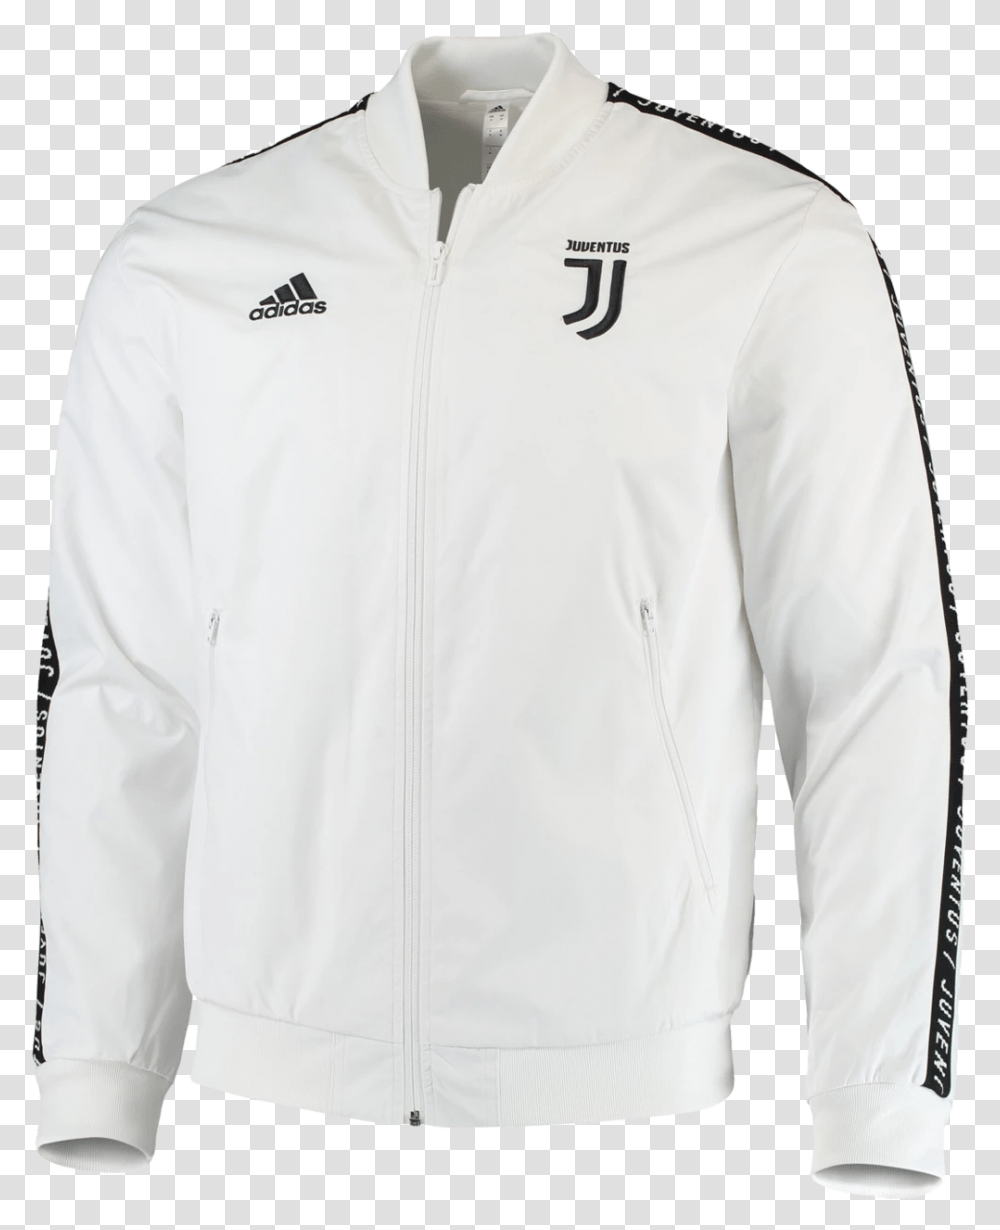 Adidas Juventus White Jacket, Apparel, Coat, Sweatshirt Transparent Png